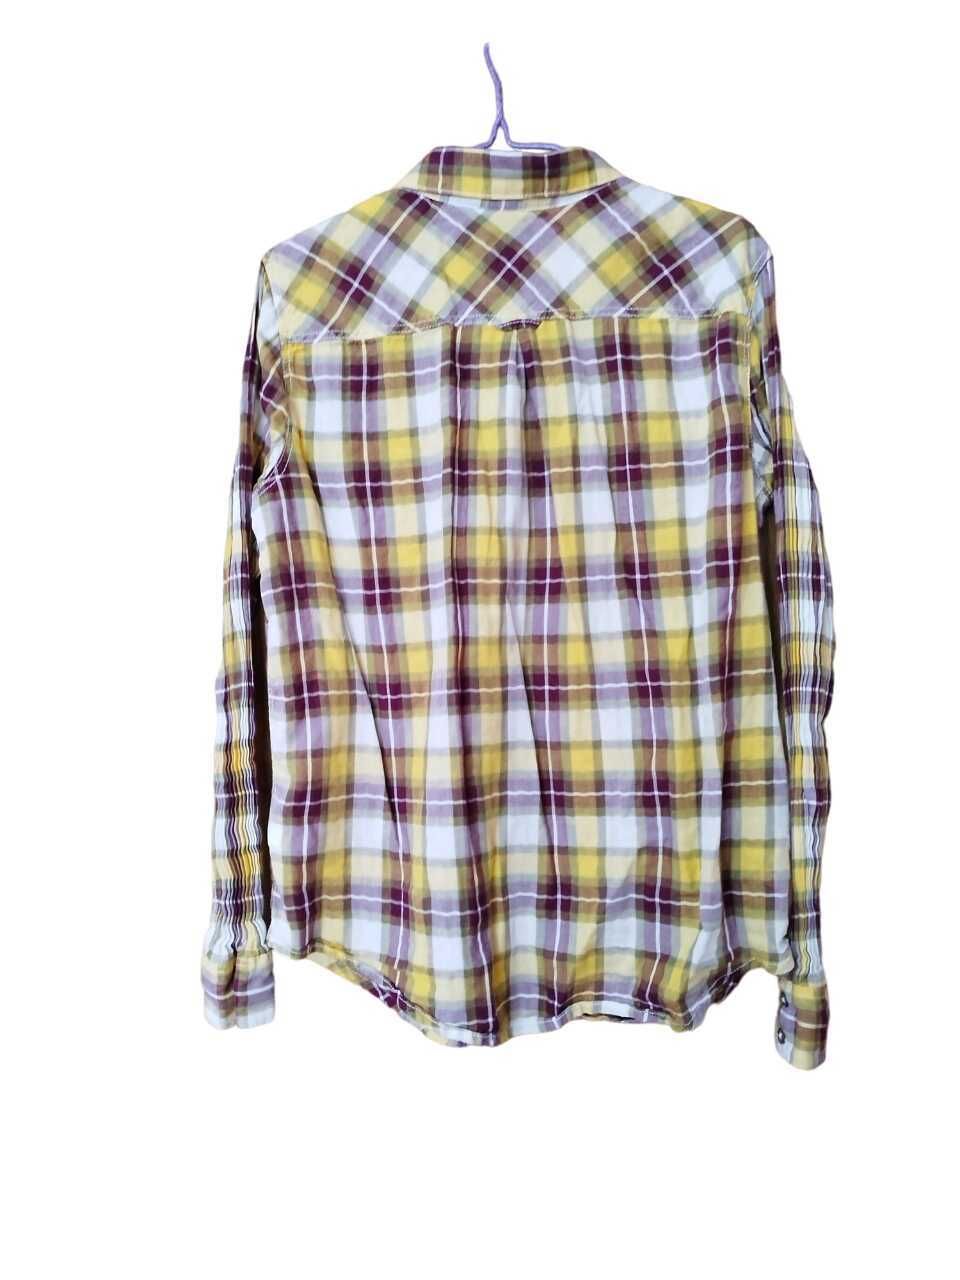 Дамска карирана риза с джоб H&M, 100% памук, 44